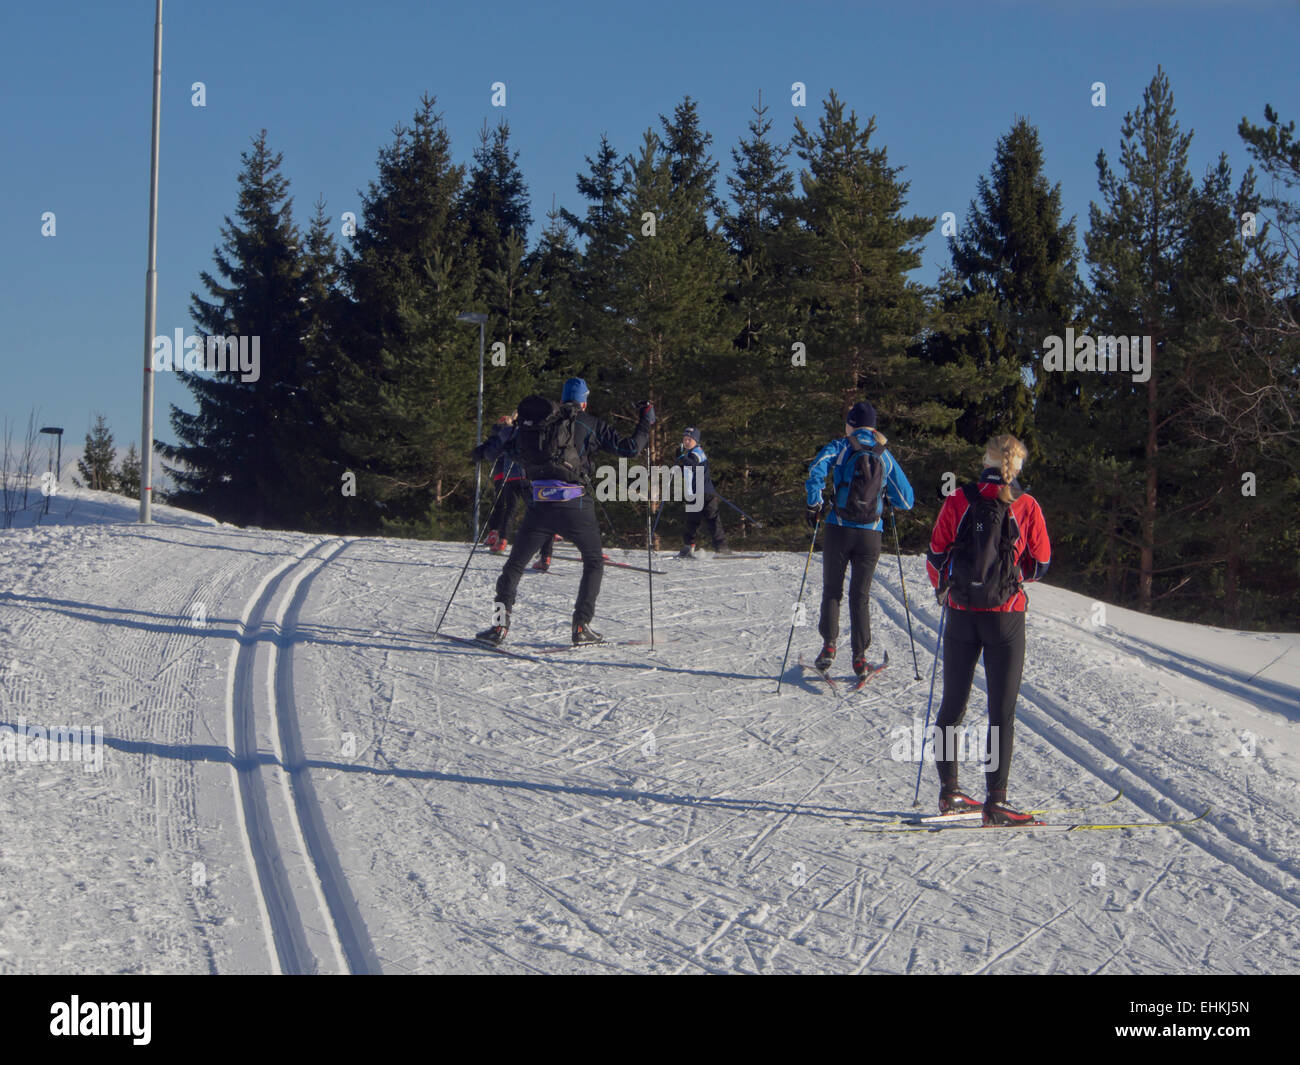 Un inverno pieno di sole domenica nelle piste da sci in Nordmarka, Oslo Norvegia, sciatori voce nel bosco Foto Stock